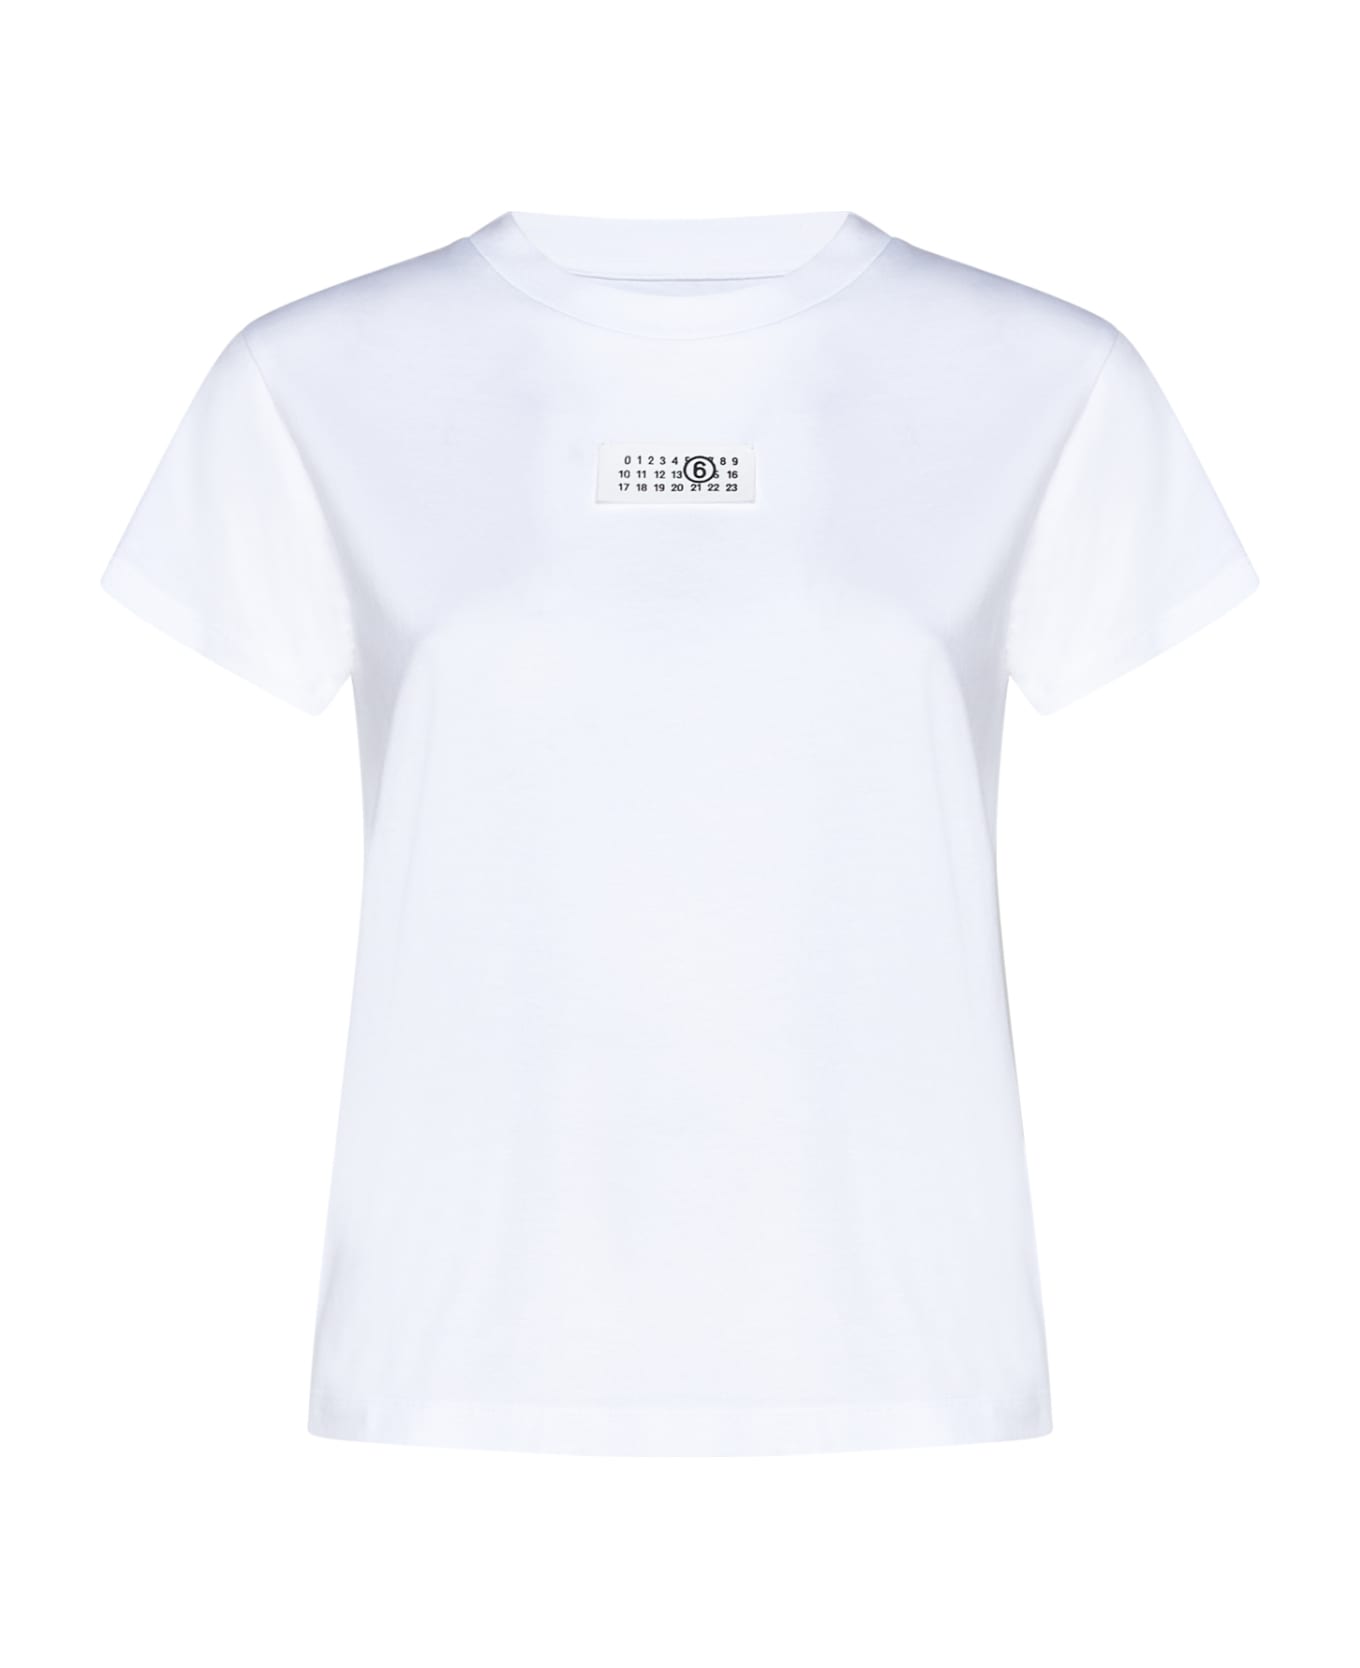 MM6 Maison Margiela T-Shirt - White Tシャツ